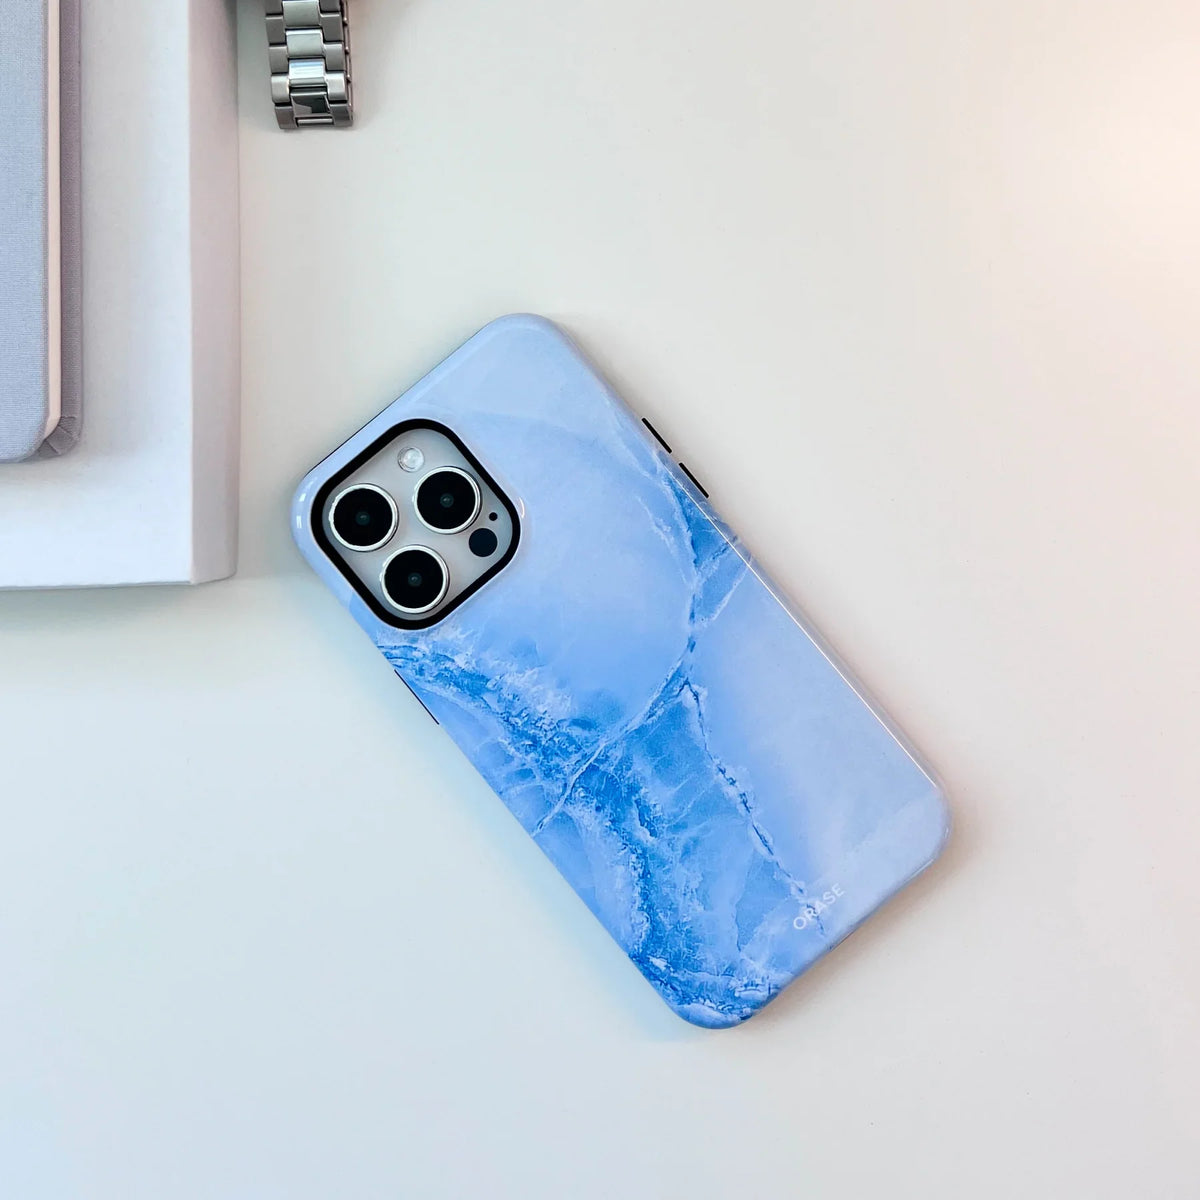 Arctic Marble iPhone Case - iPhone 11 Pro Max